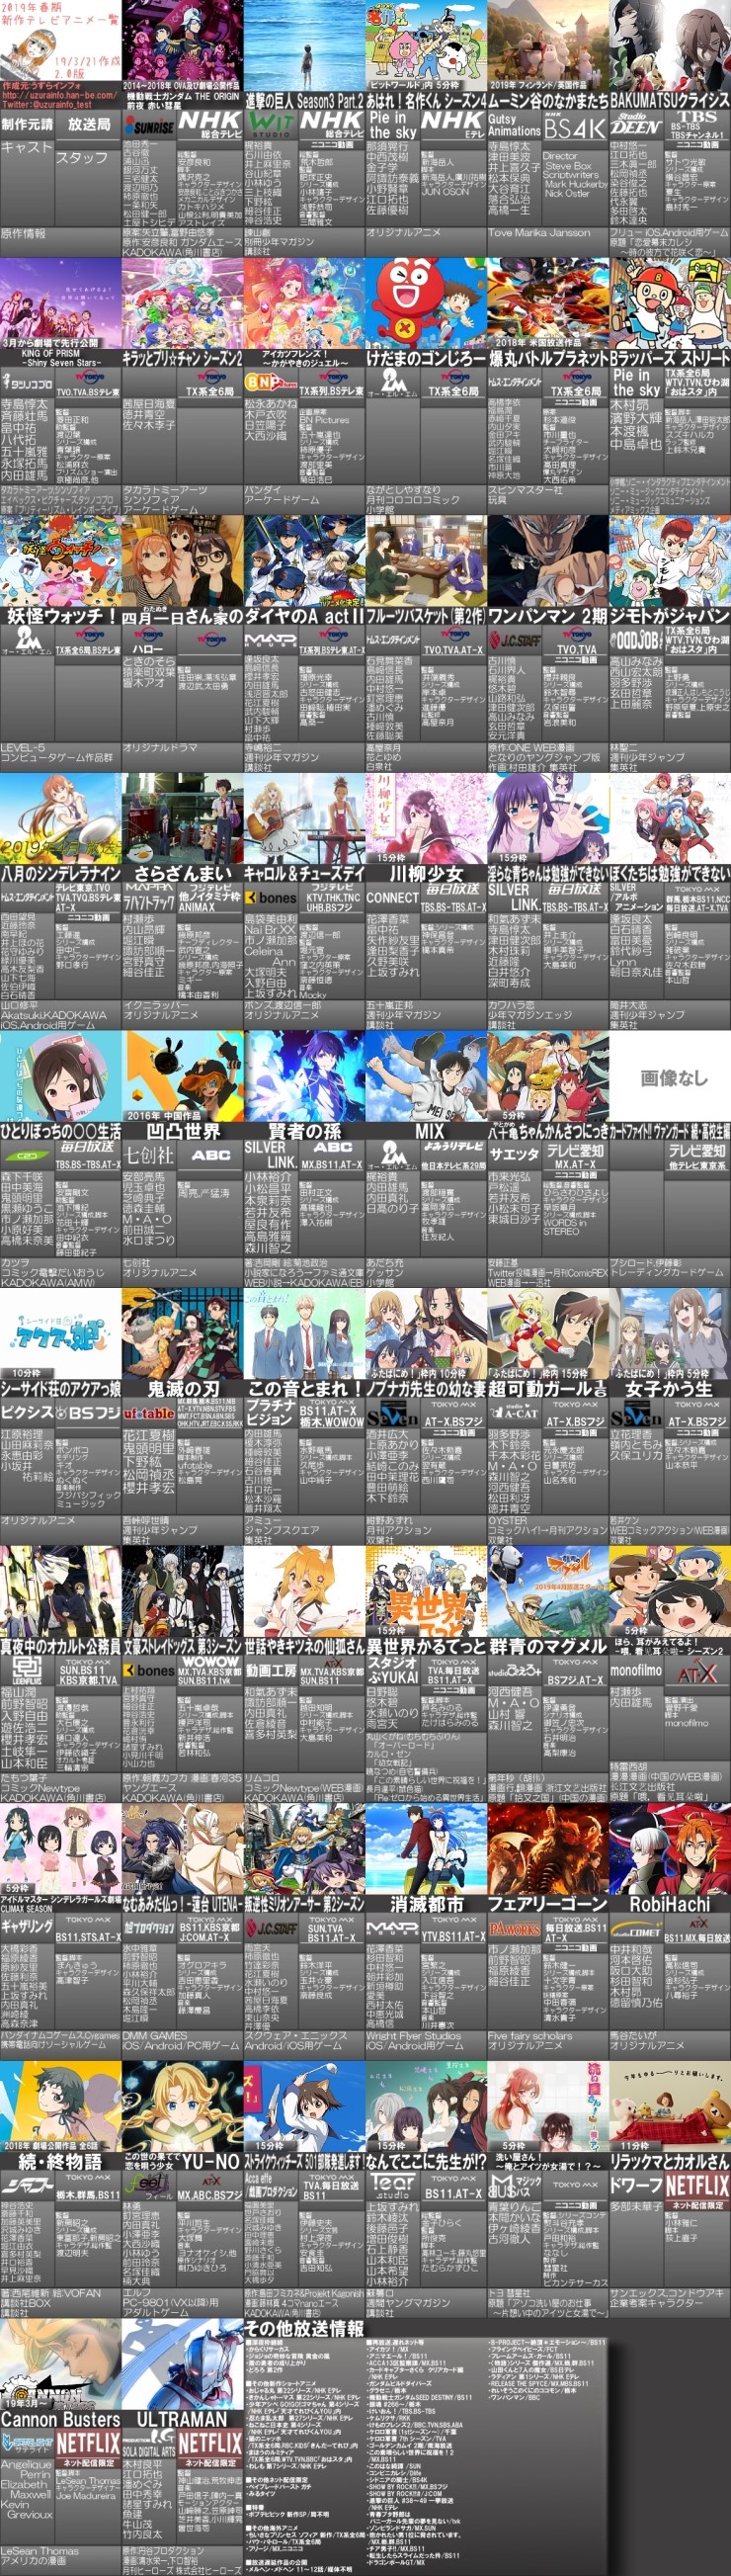 [애니메이션] 2019년 2분기(4월) 일본 애니메이션 비공식 편성표